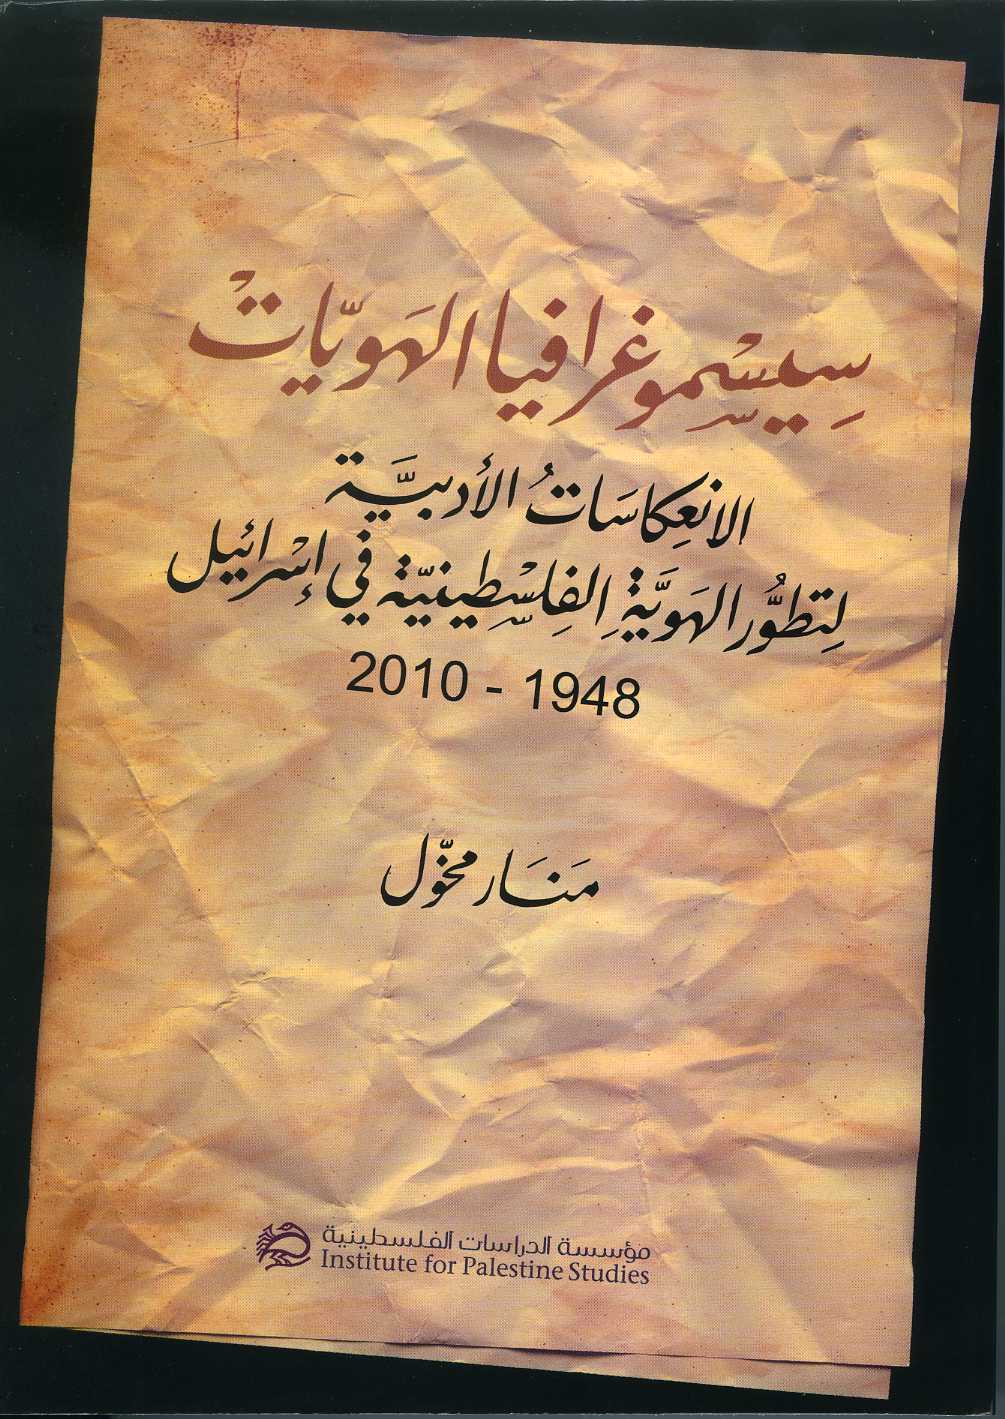 جديد: سيسموغرافيا الهويات... الانعكاسات الأدبية لتطور الهوية الفلسطينية في إسرائيل 1948-2010